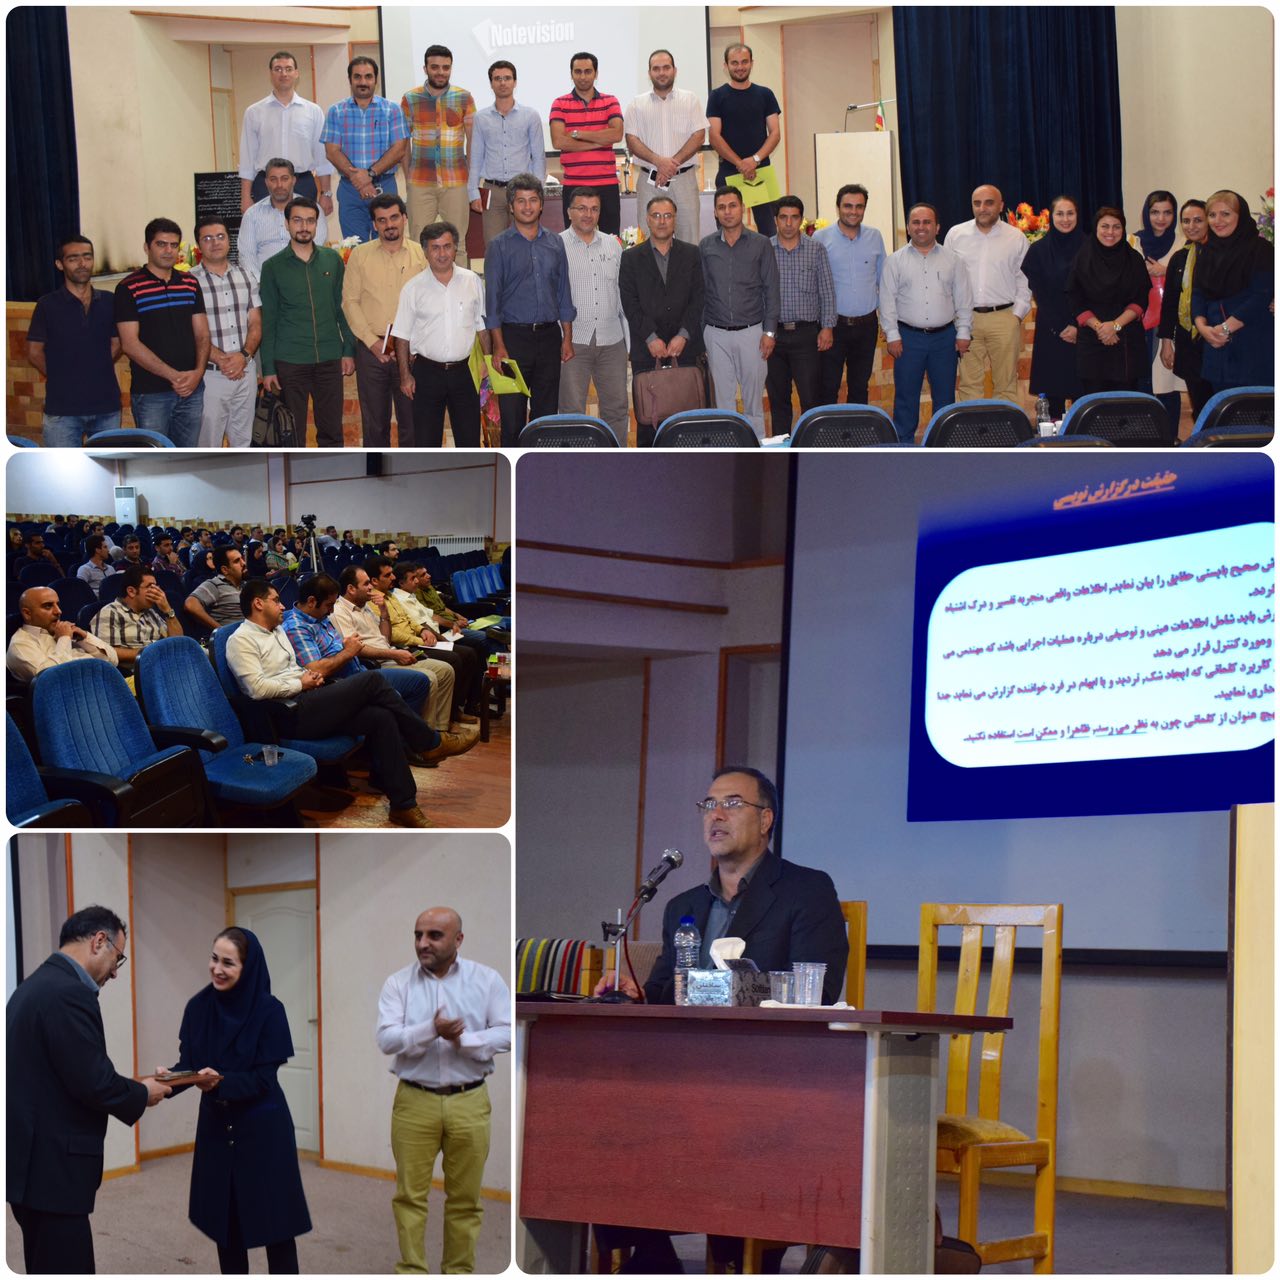 دوره آموزشي آشنايي بامسائل حقوق مهندسي و گزارش نويسي در نوشهر برگزار شد